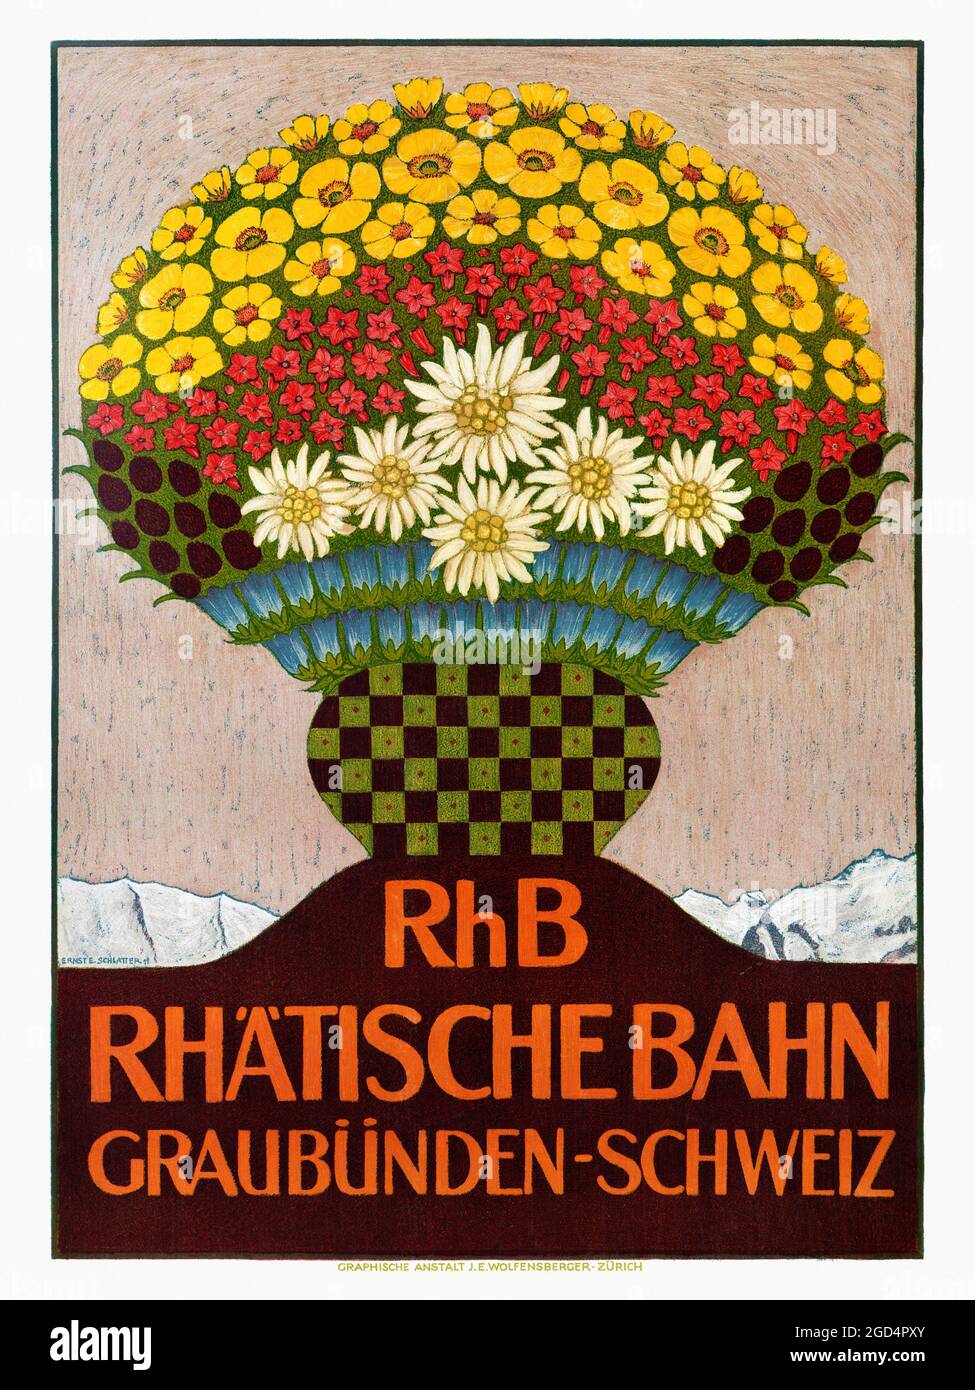 RhB Rhätische Bahn. Graubünden, Schweiz von Ernst Emil Schlatter (1883-1954). Restauriertes Vintage-Poster, das 1911 in der Schweiz veröffentlicht wurde. Stockfoto